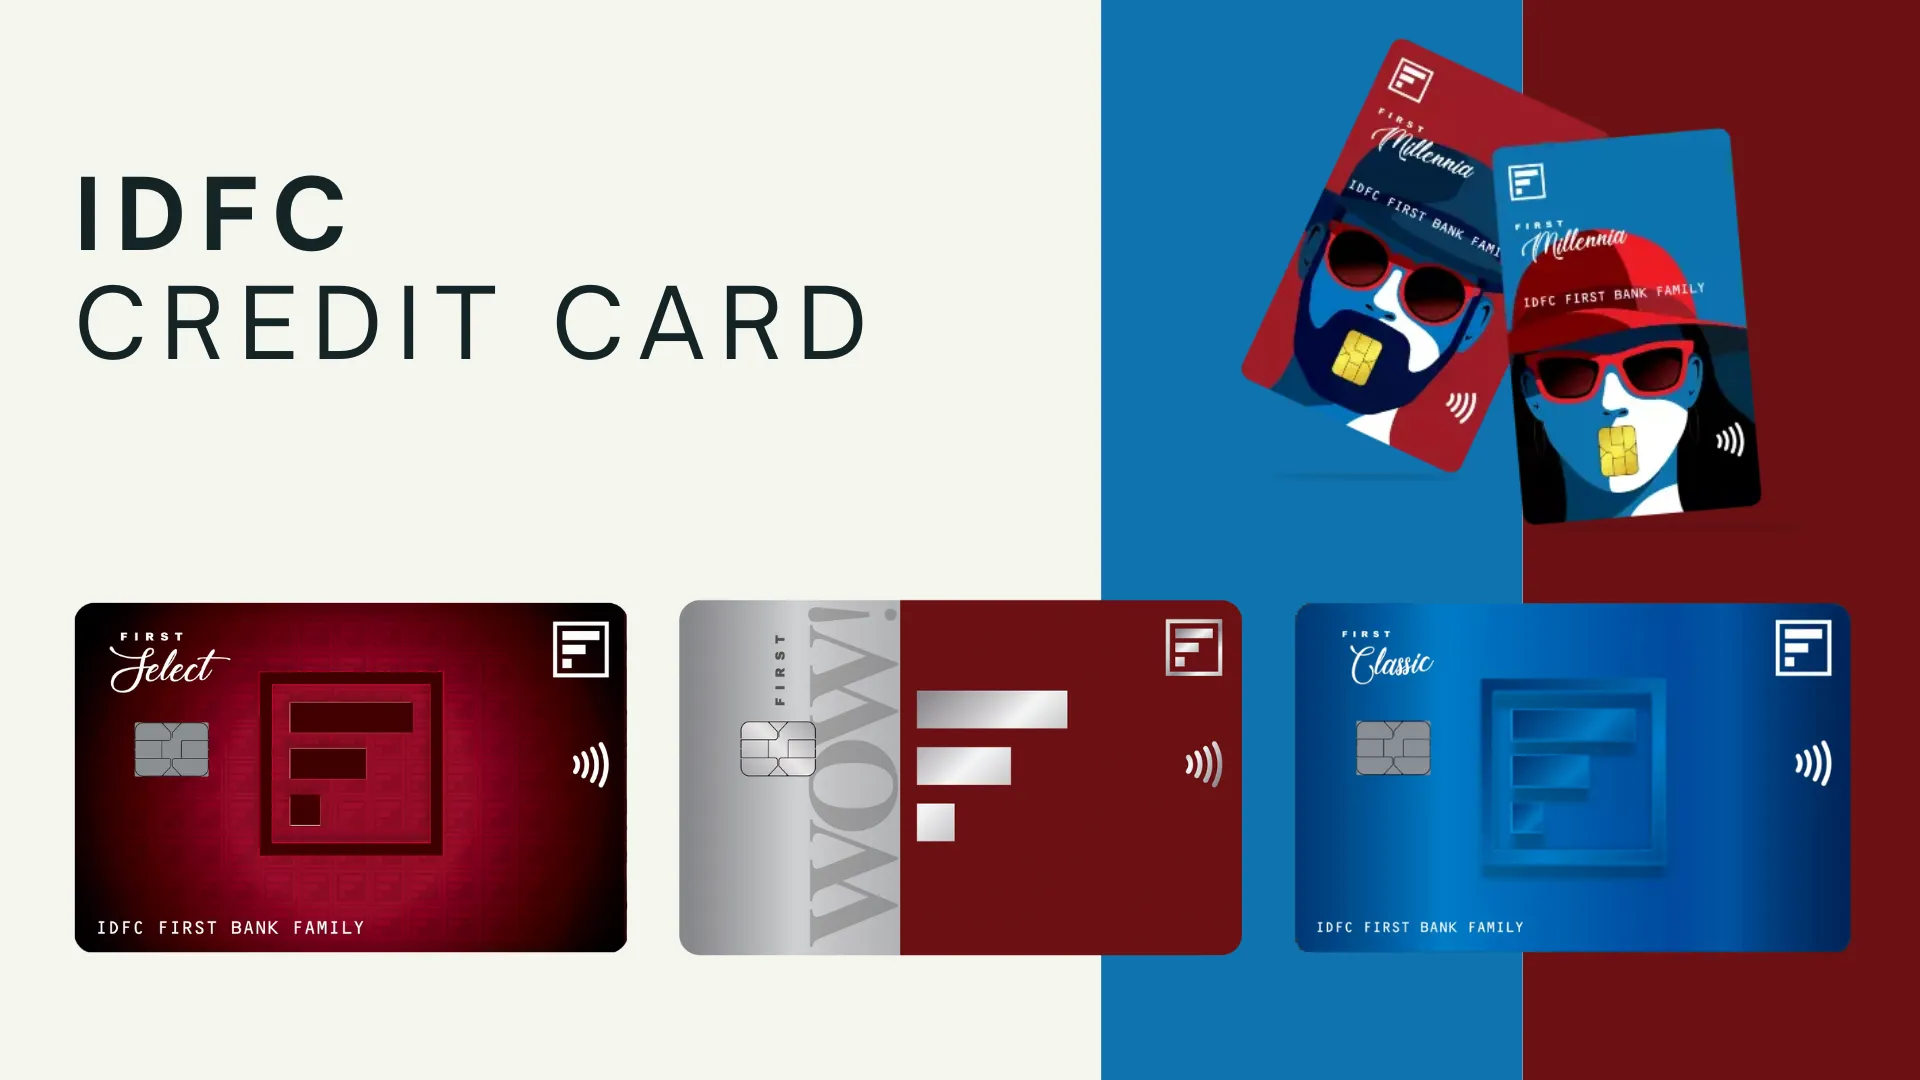 Kotak Credit Card